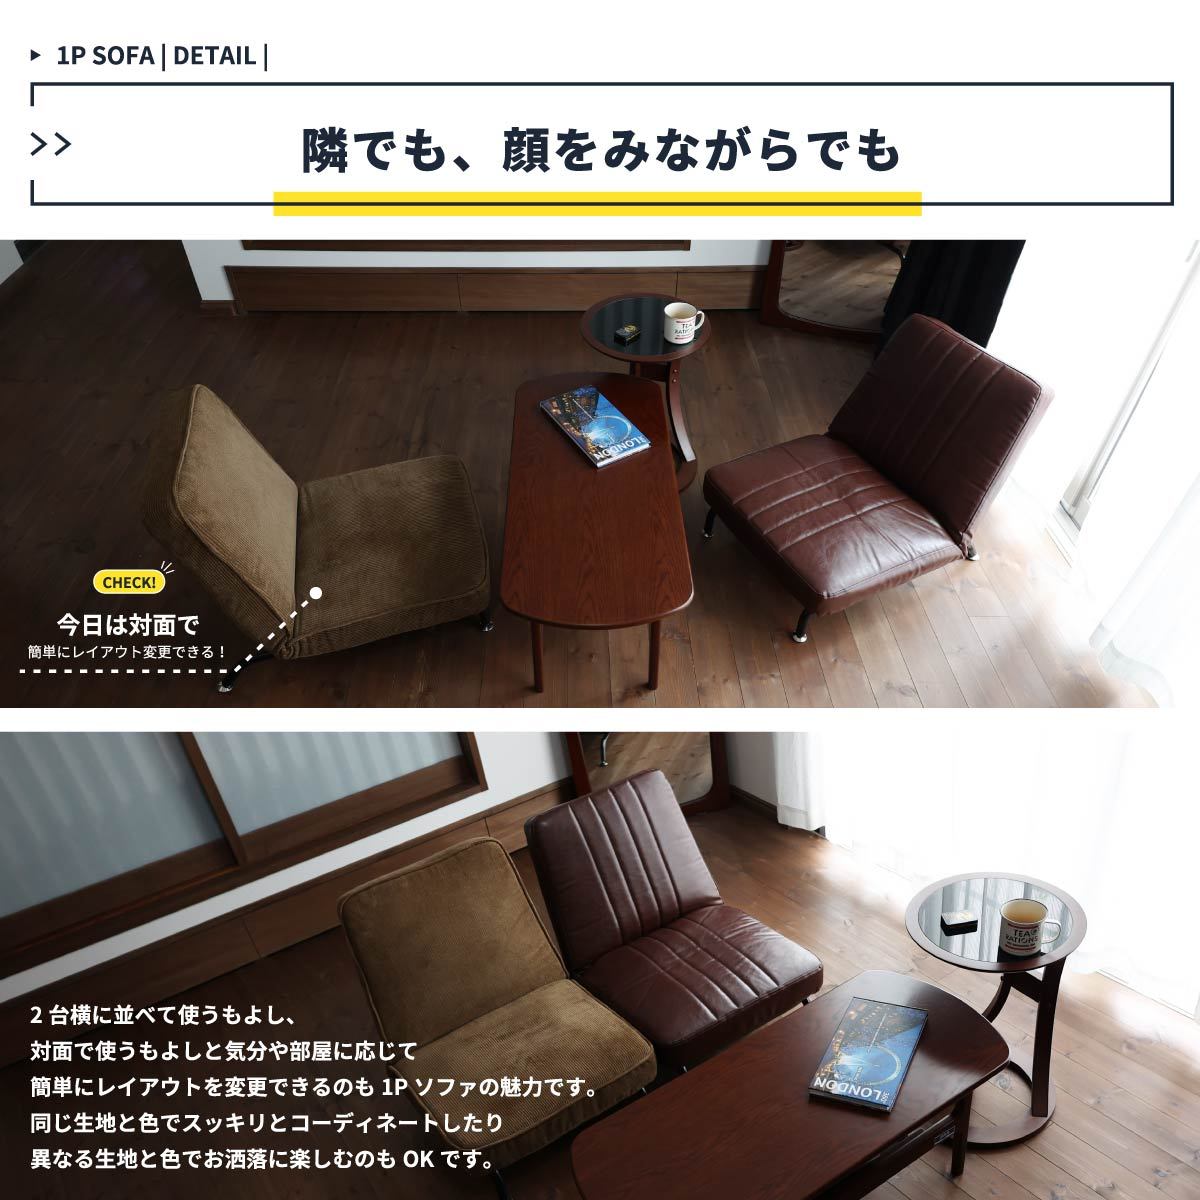 ソファ 1P 一人掛け おしゃれ アンティーク調 座椅子 コンパクト リクライニング :i1261:家具インテリアショップ イーグル 通販  